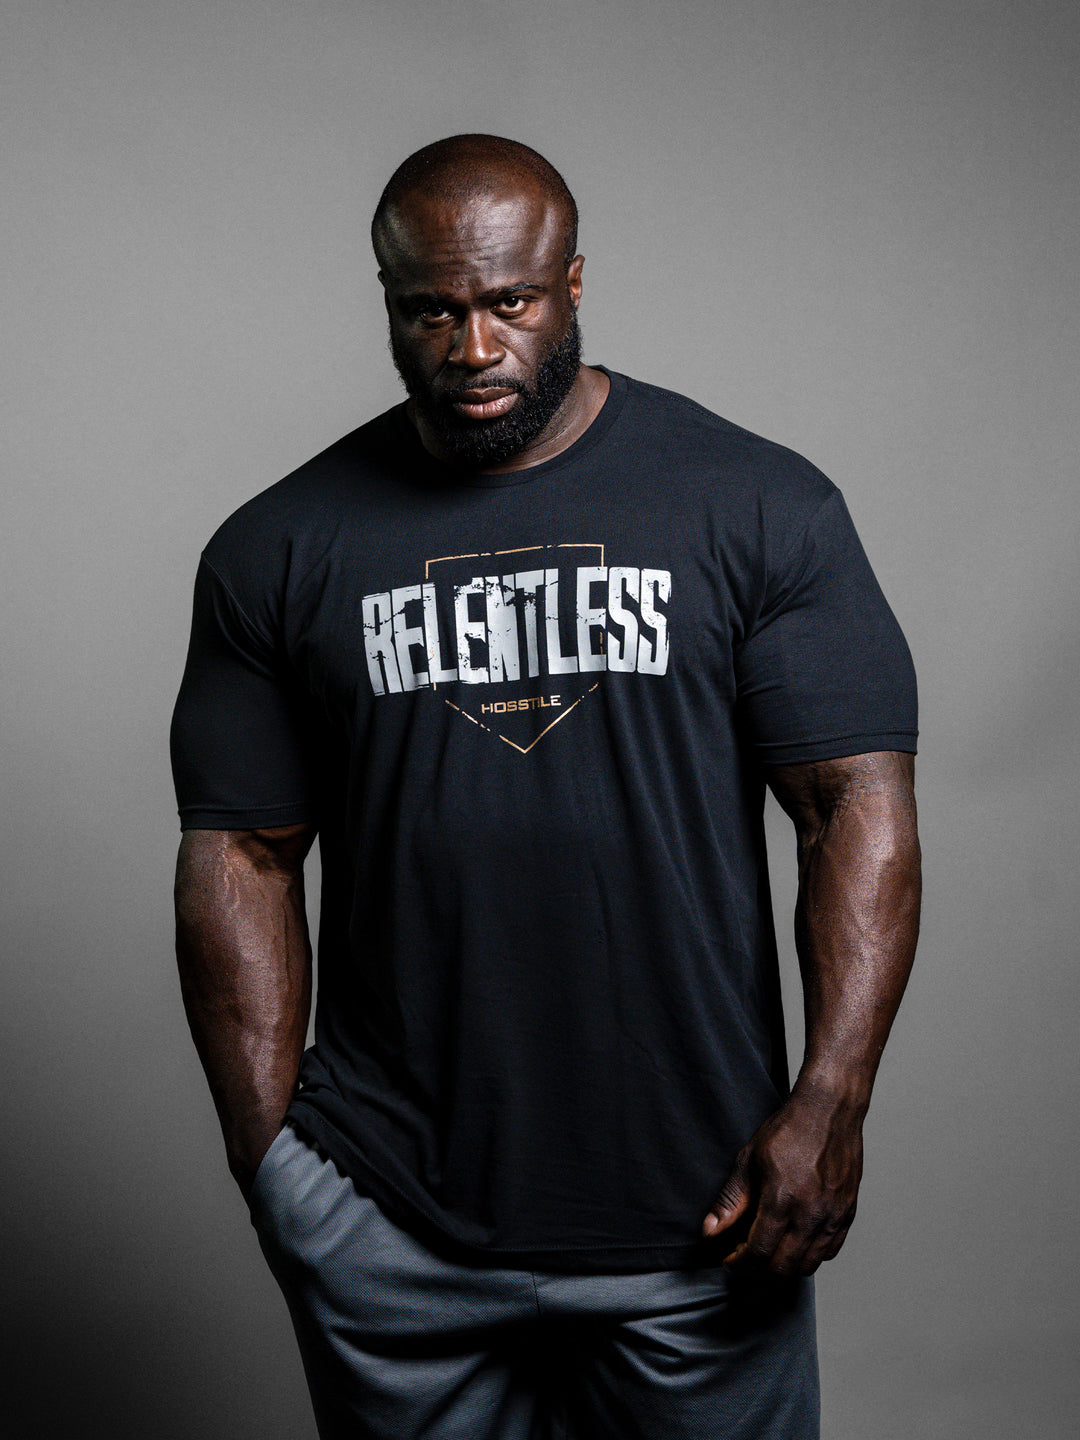 voorbeeld Mail Beleefd Hosstile | Relentless Bodybuilding Workout T-Shirt